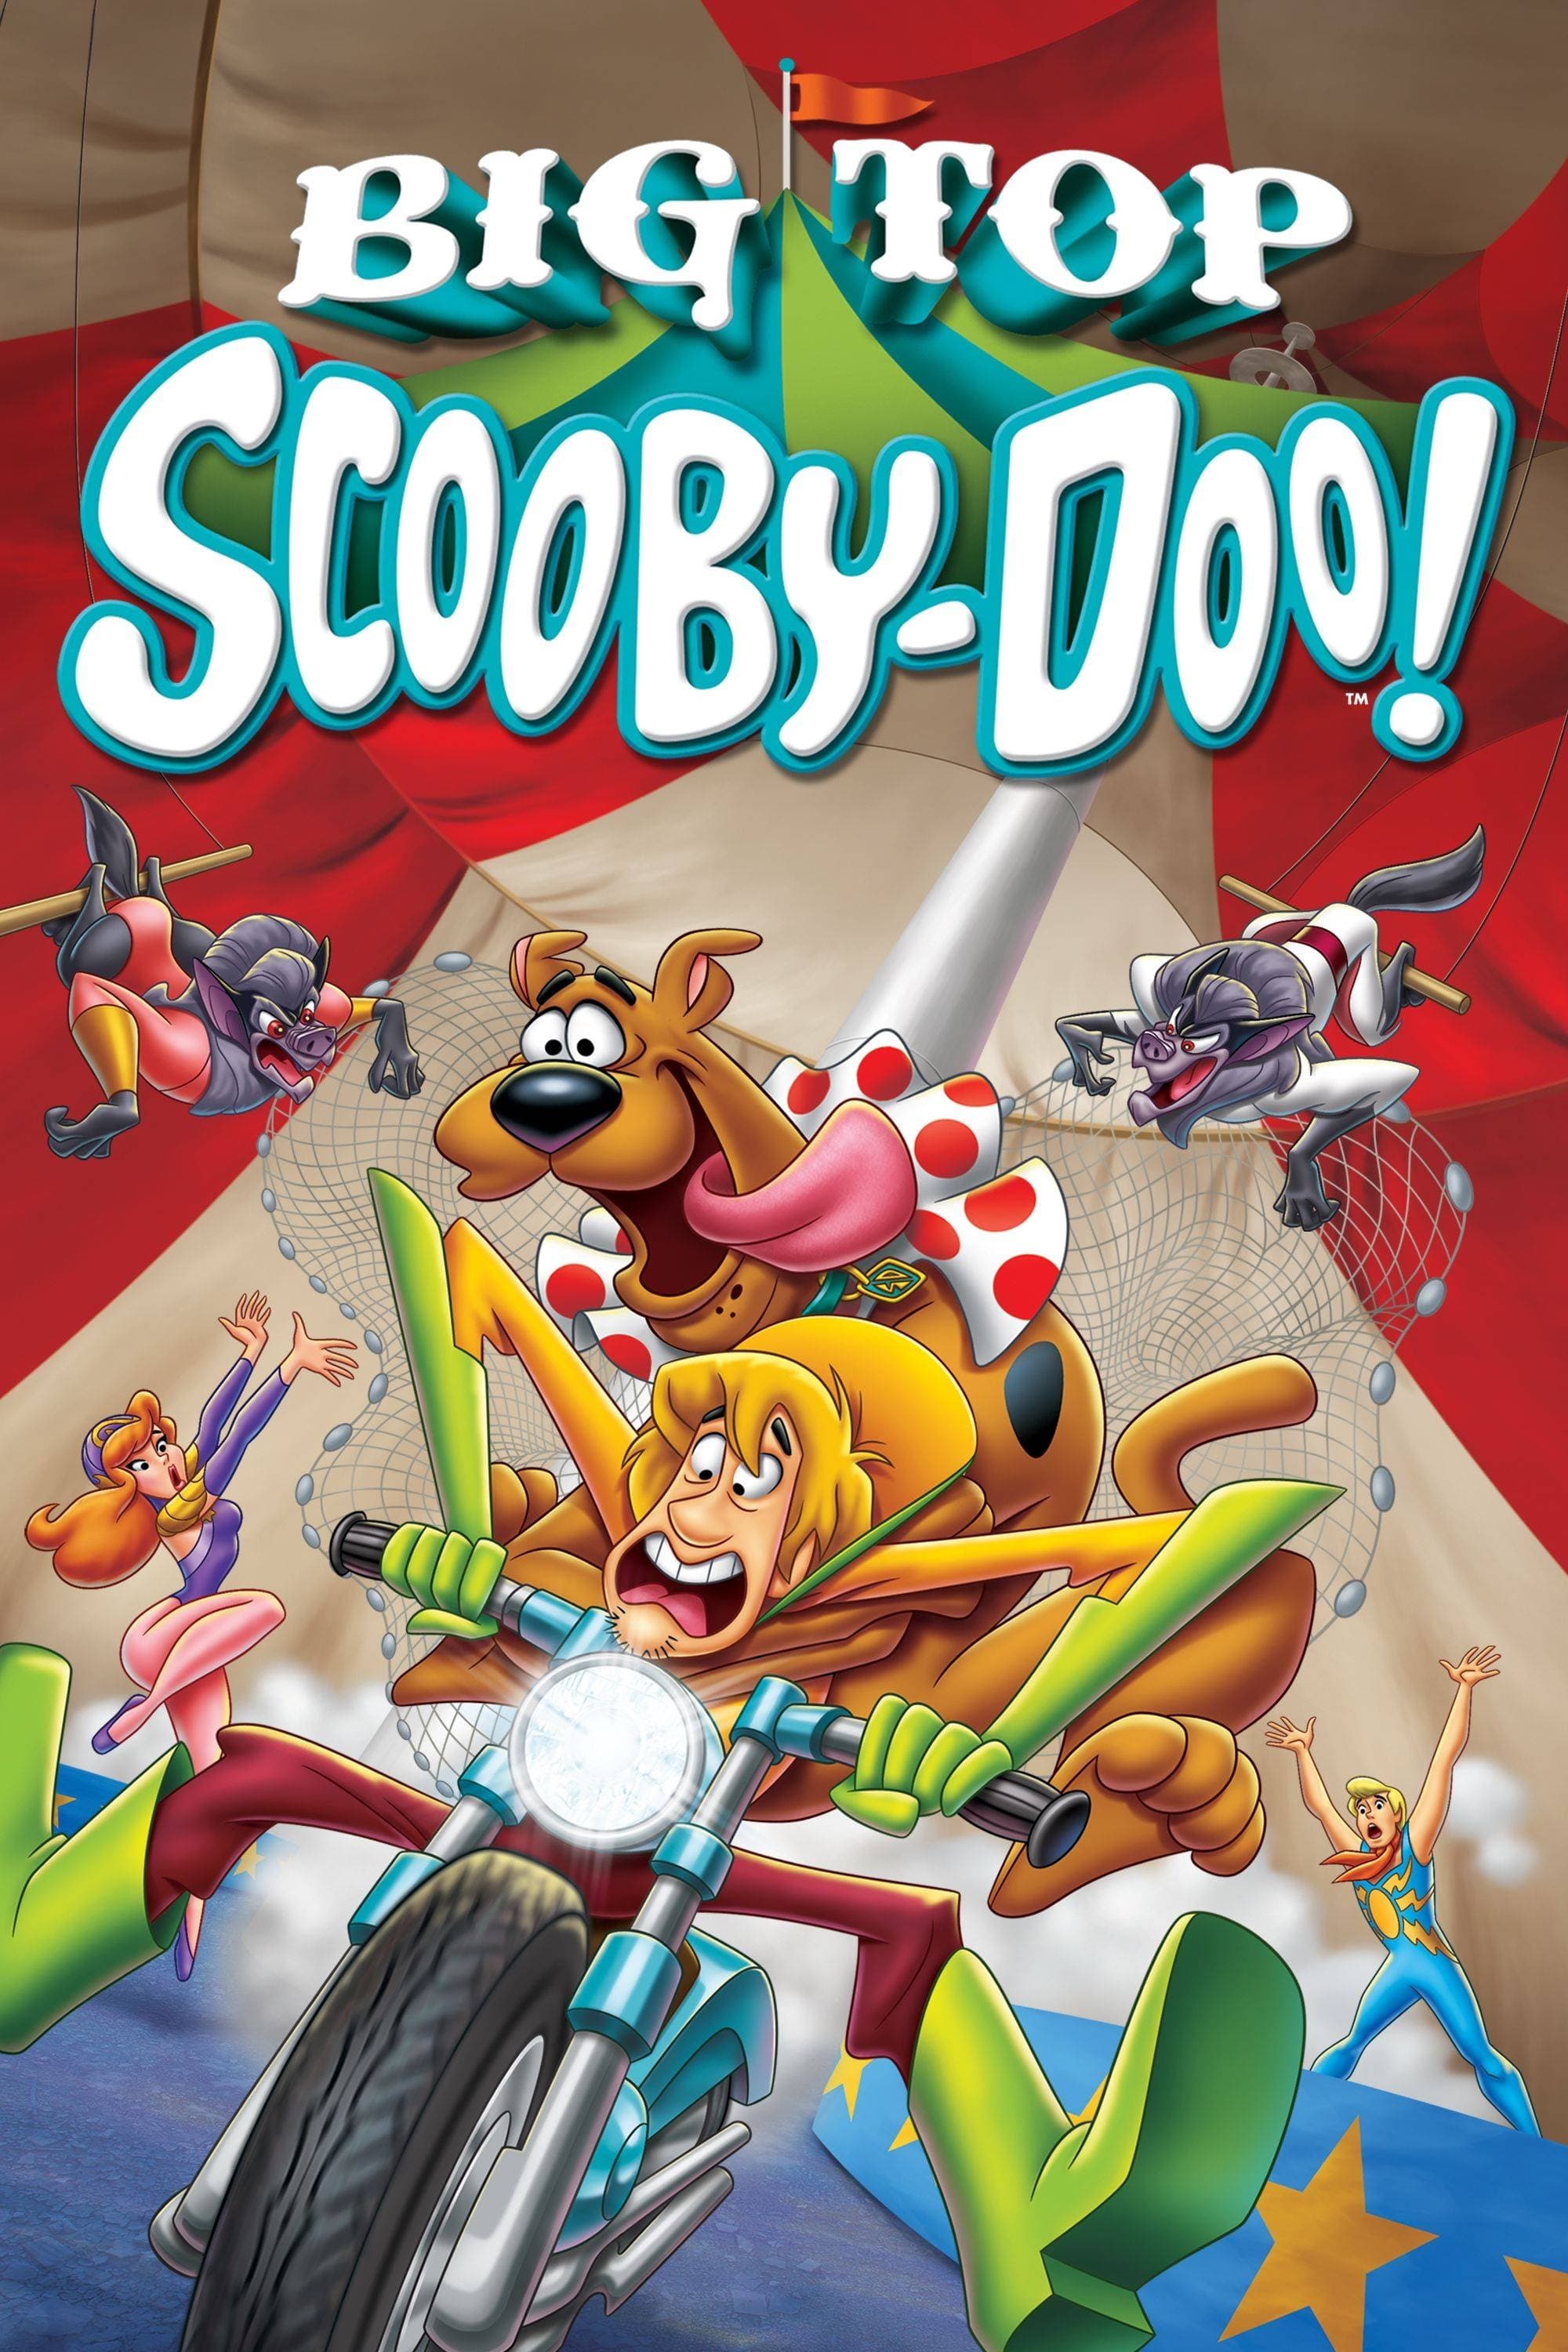 Scooby-Doo ! Tous en piste (2012)